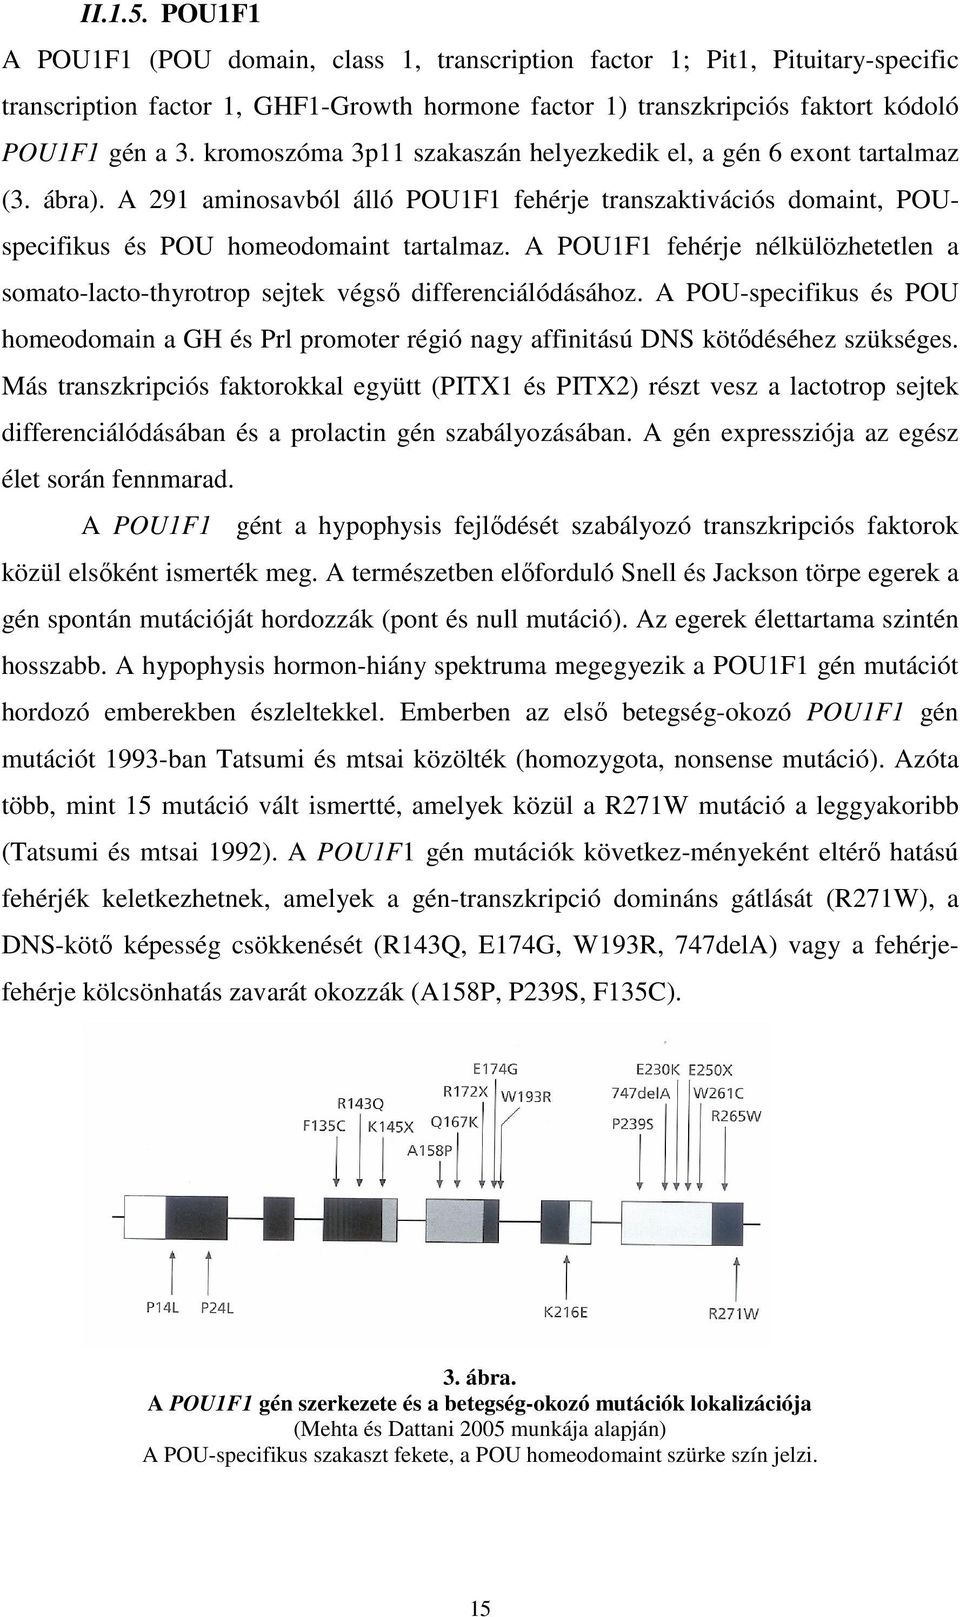 A POU1F1 fehérje nélkülözhetetlen a somato-lacto-thyrotrop sejtek végső differenciálódásához. A POU-specifikus és POU homeodomain a GH és Prl promoter régió nagy affinitású DNS kötődéséhez szükséges.